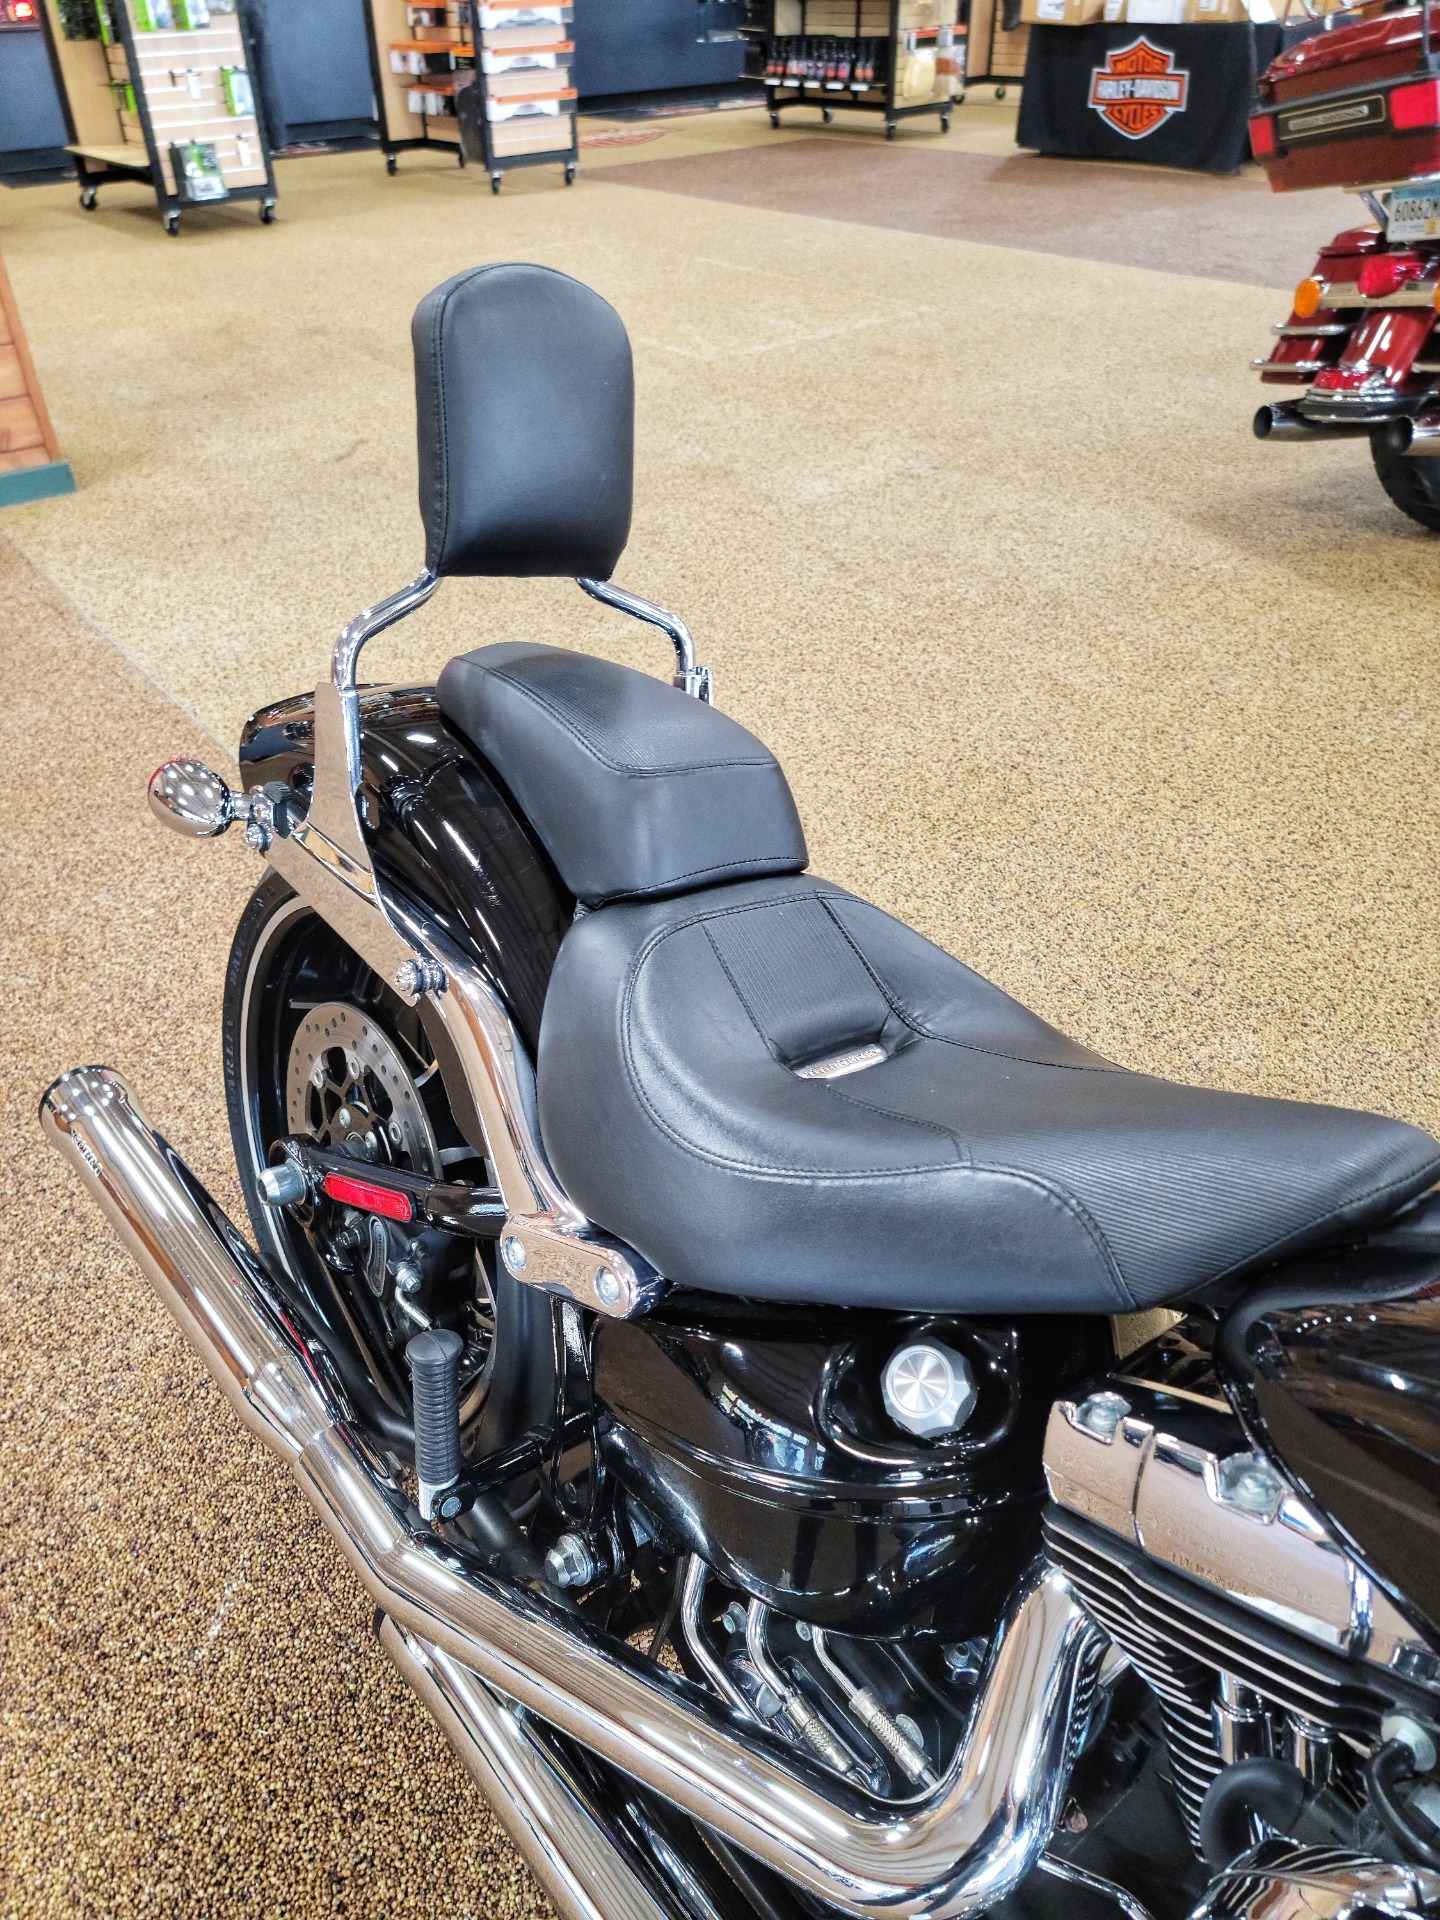 Used 2016 Harley Davidson Breakout Vivid Black Motorcycles In Sauk Rapids Mn B0022